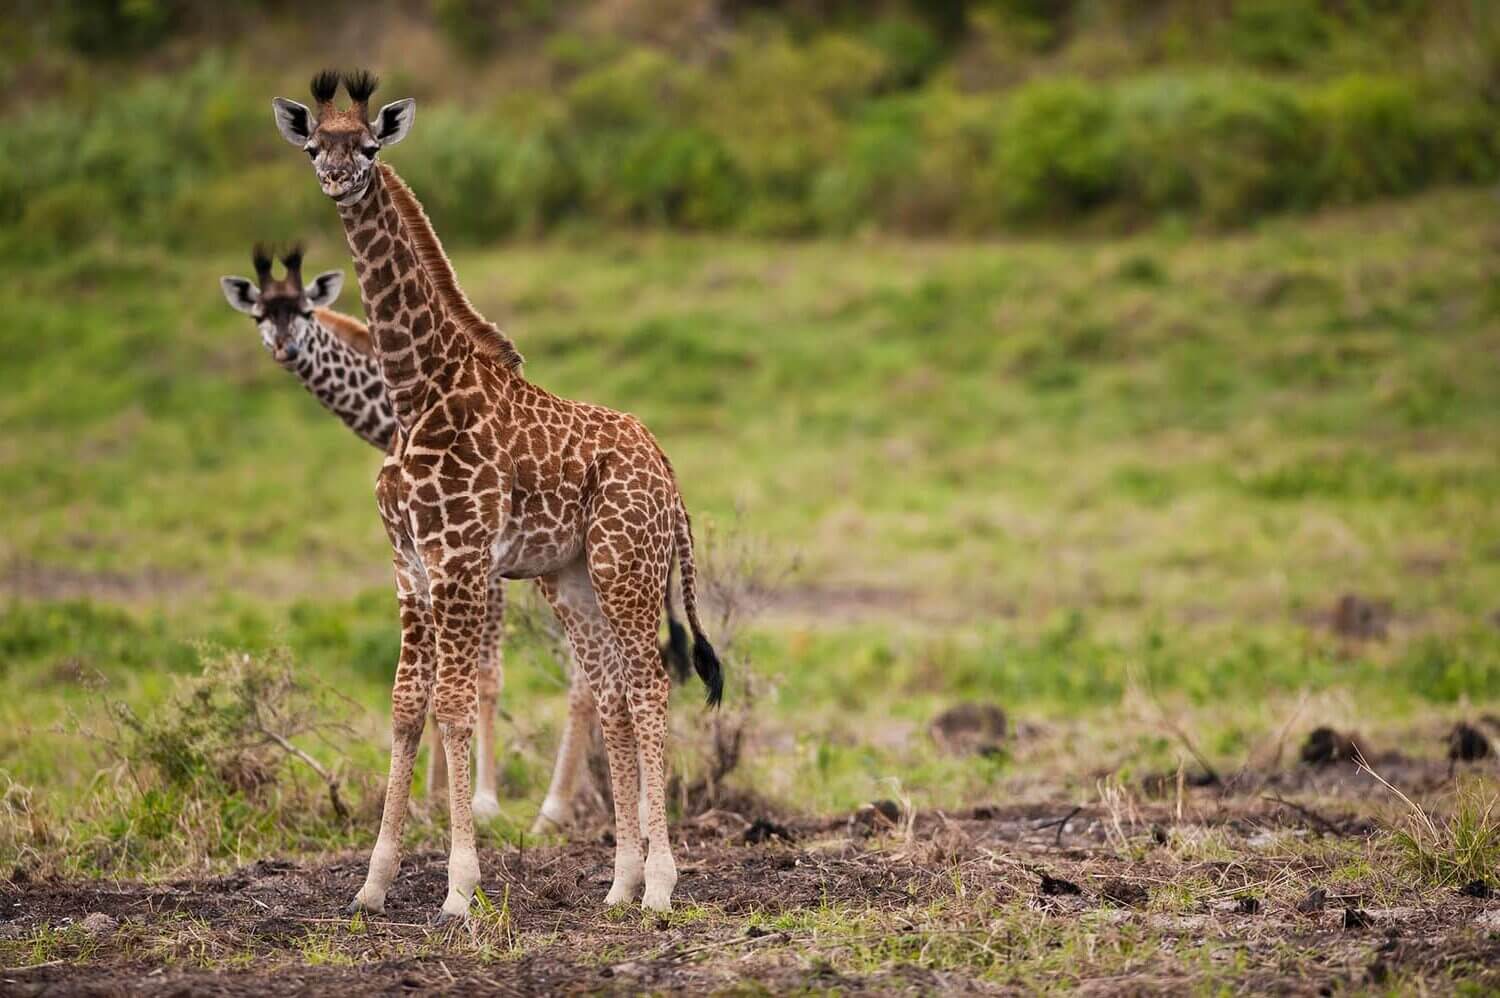 giraffe in Arusha National Park, Tanzania